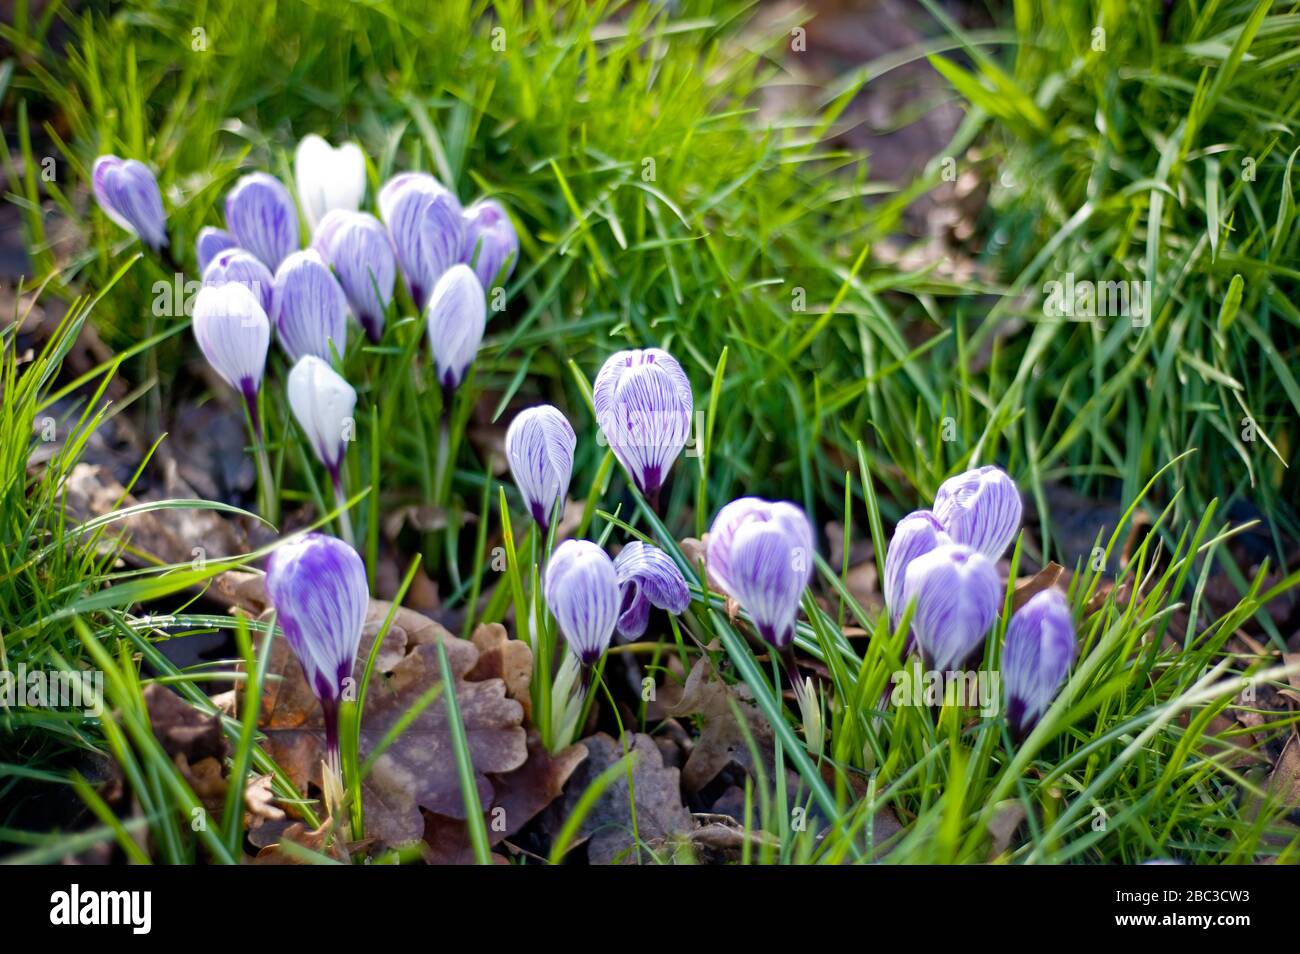 Ein kleiner Cluster von violetten und weißen Krokussen, die aus dem Boden hervorgehen, der von grünem Gras umgeben ist, wenn der Frühling dem Vereinigten Königreich nähert. Stockfoto